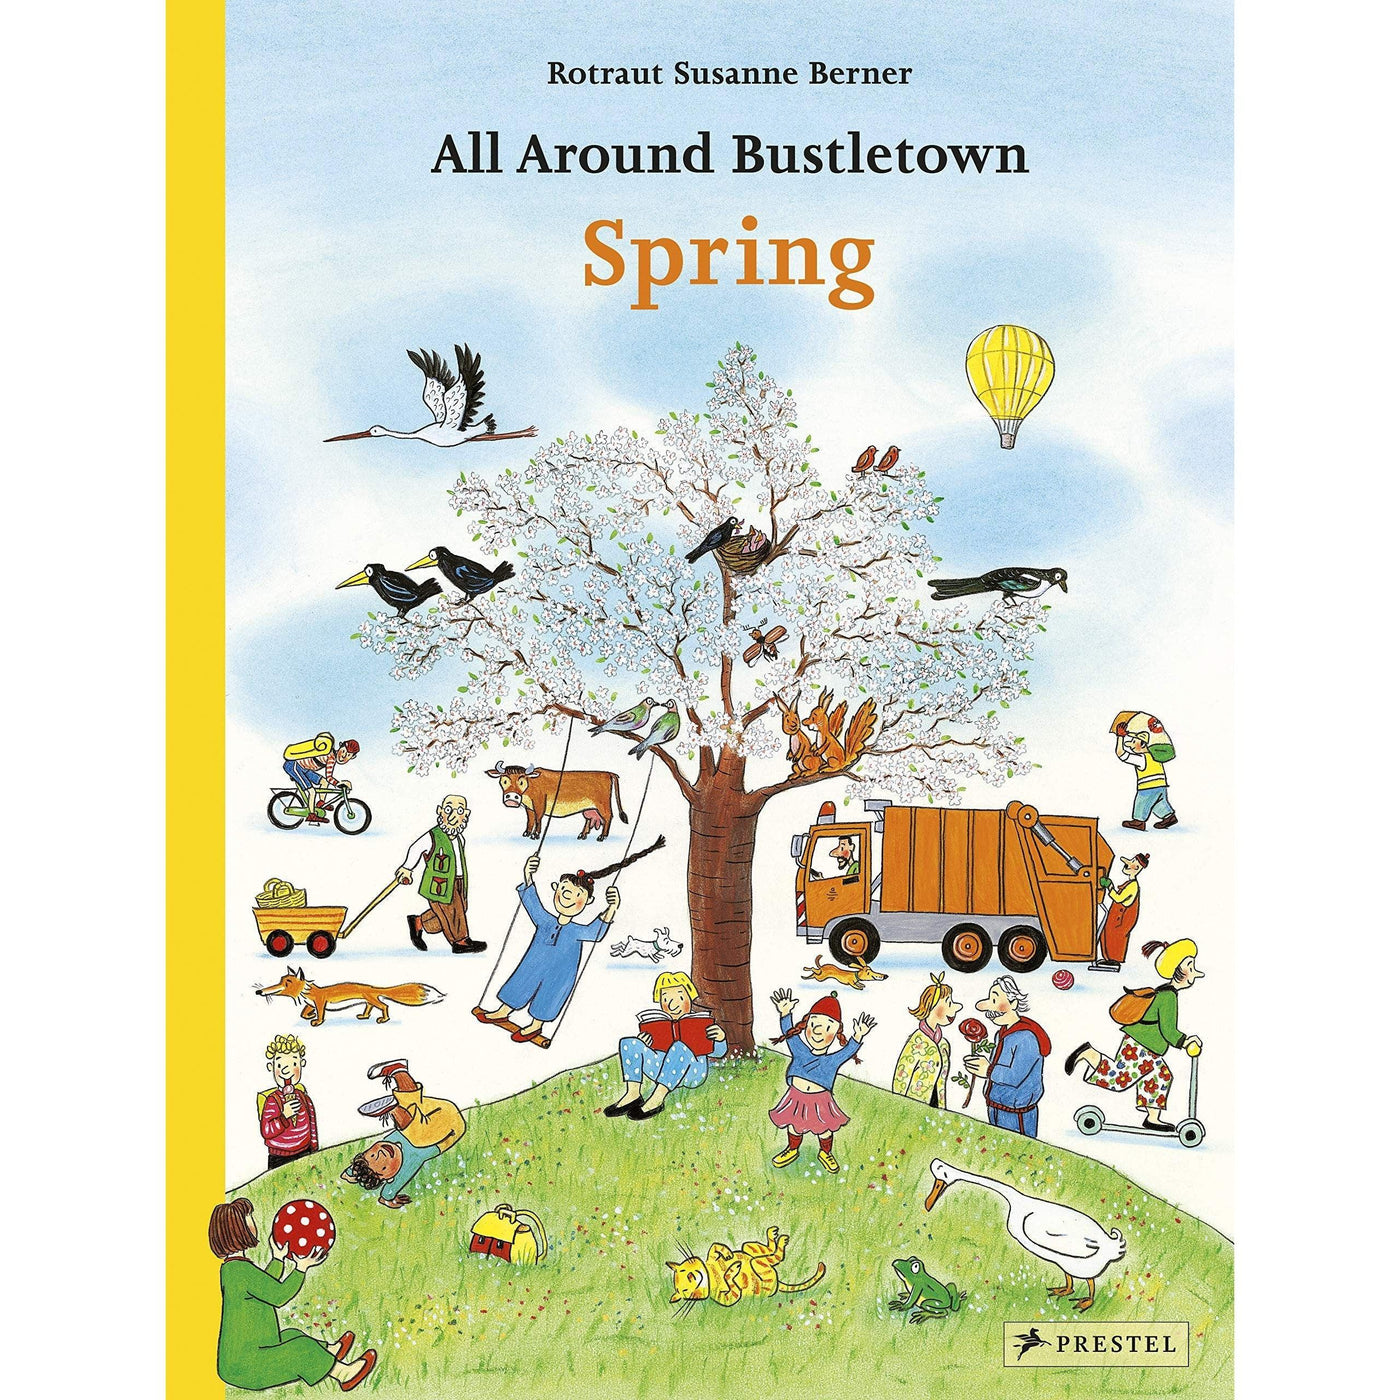 All Around Bustletown: Spring - Rotraut Susanne Berner